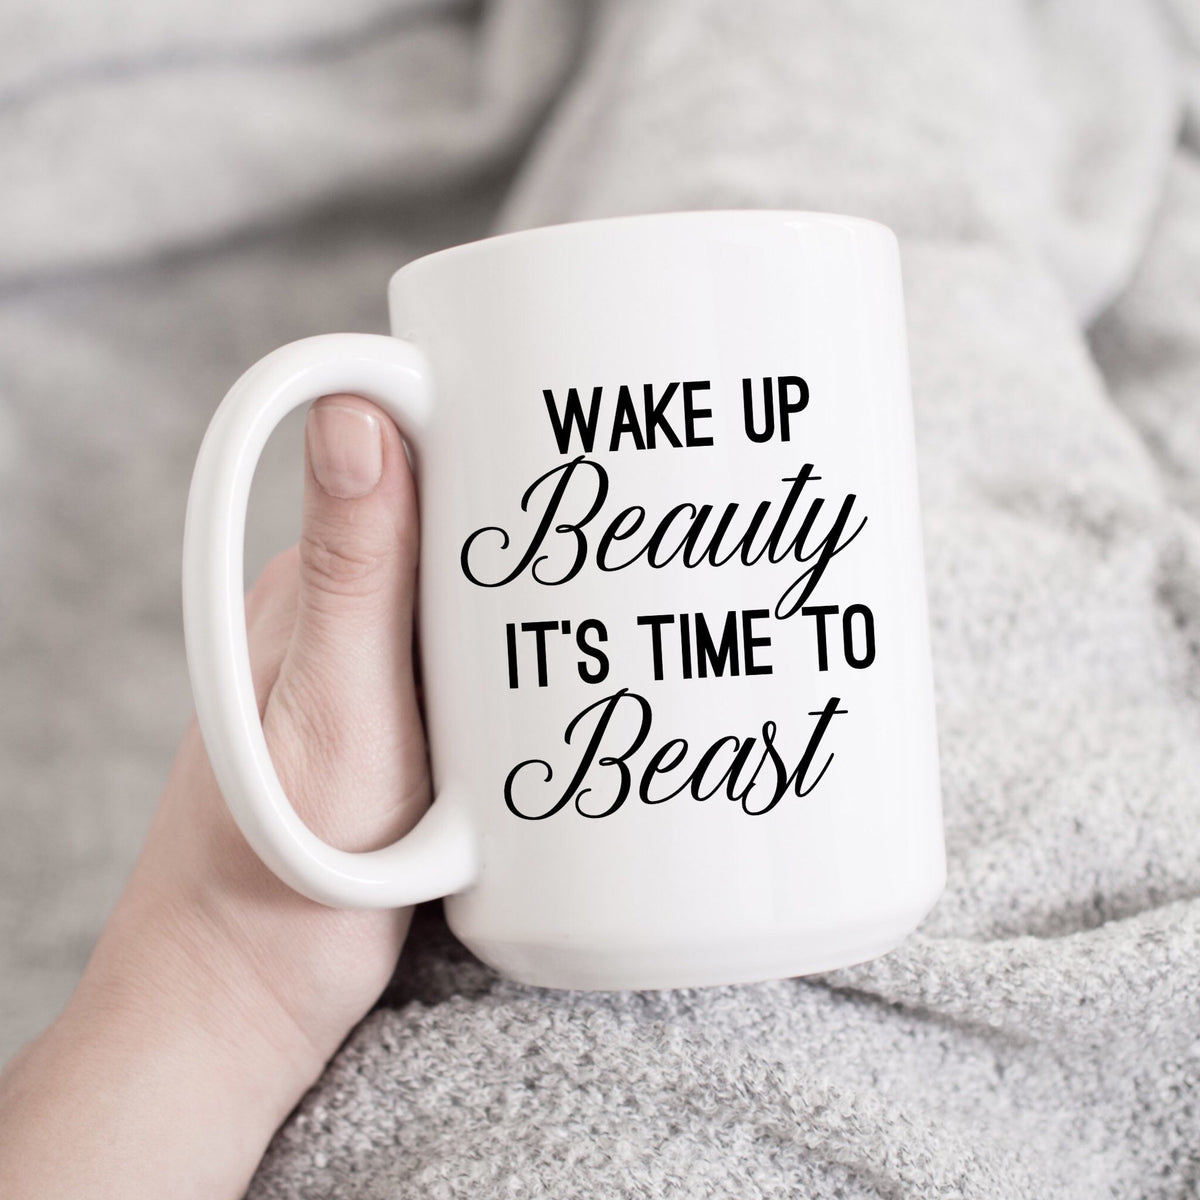 Wake Up Beauty It's Time to Beast Mug